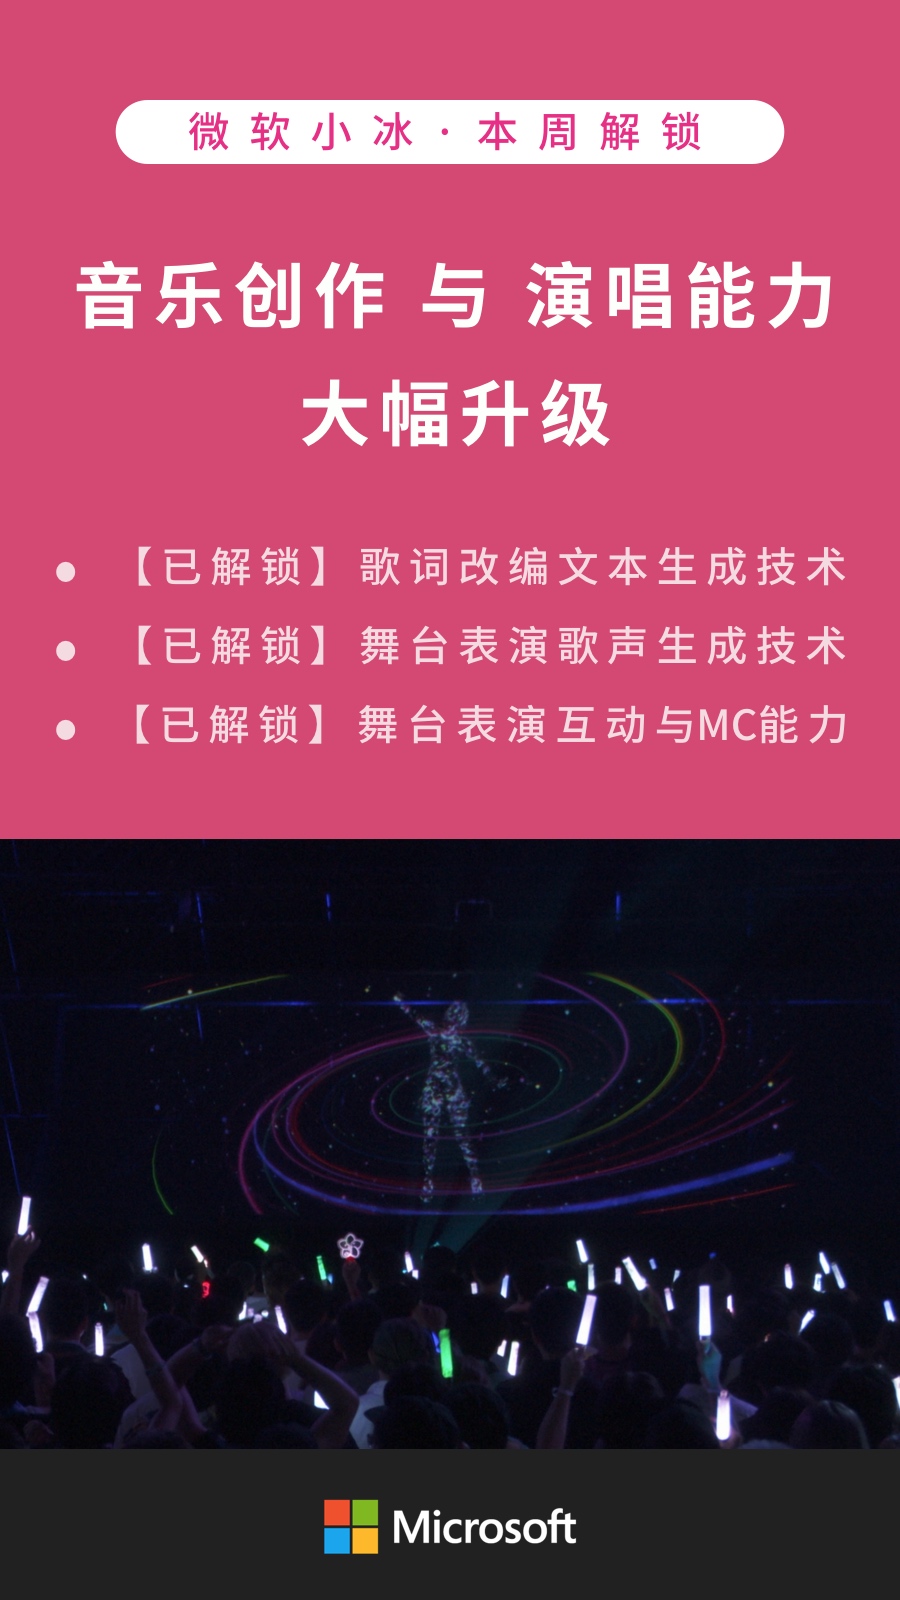 微软小冰翻唱《野狼 disco》 首度应用粤语和说唱模型